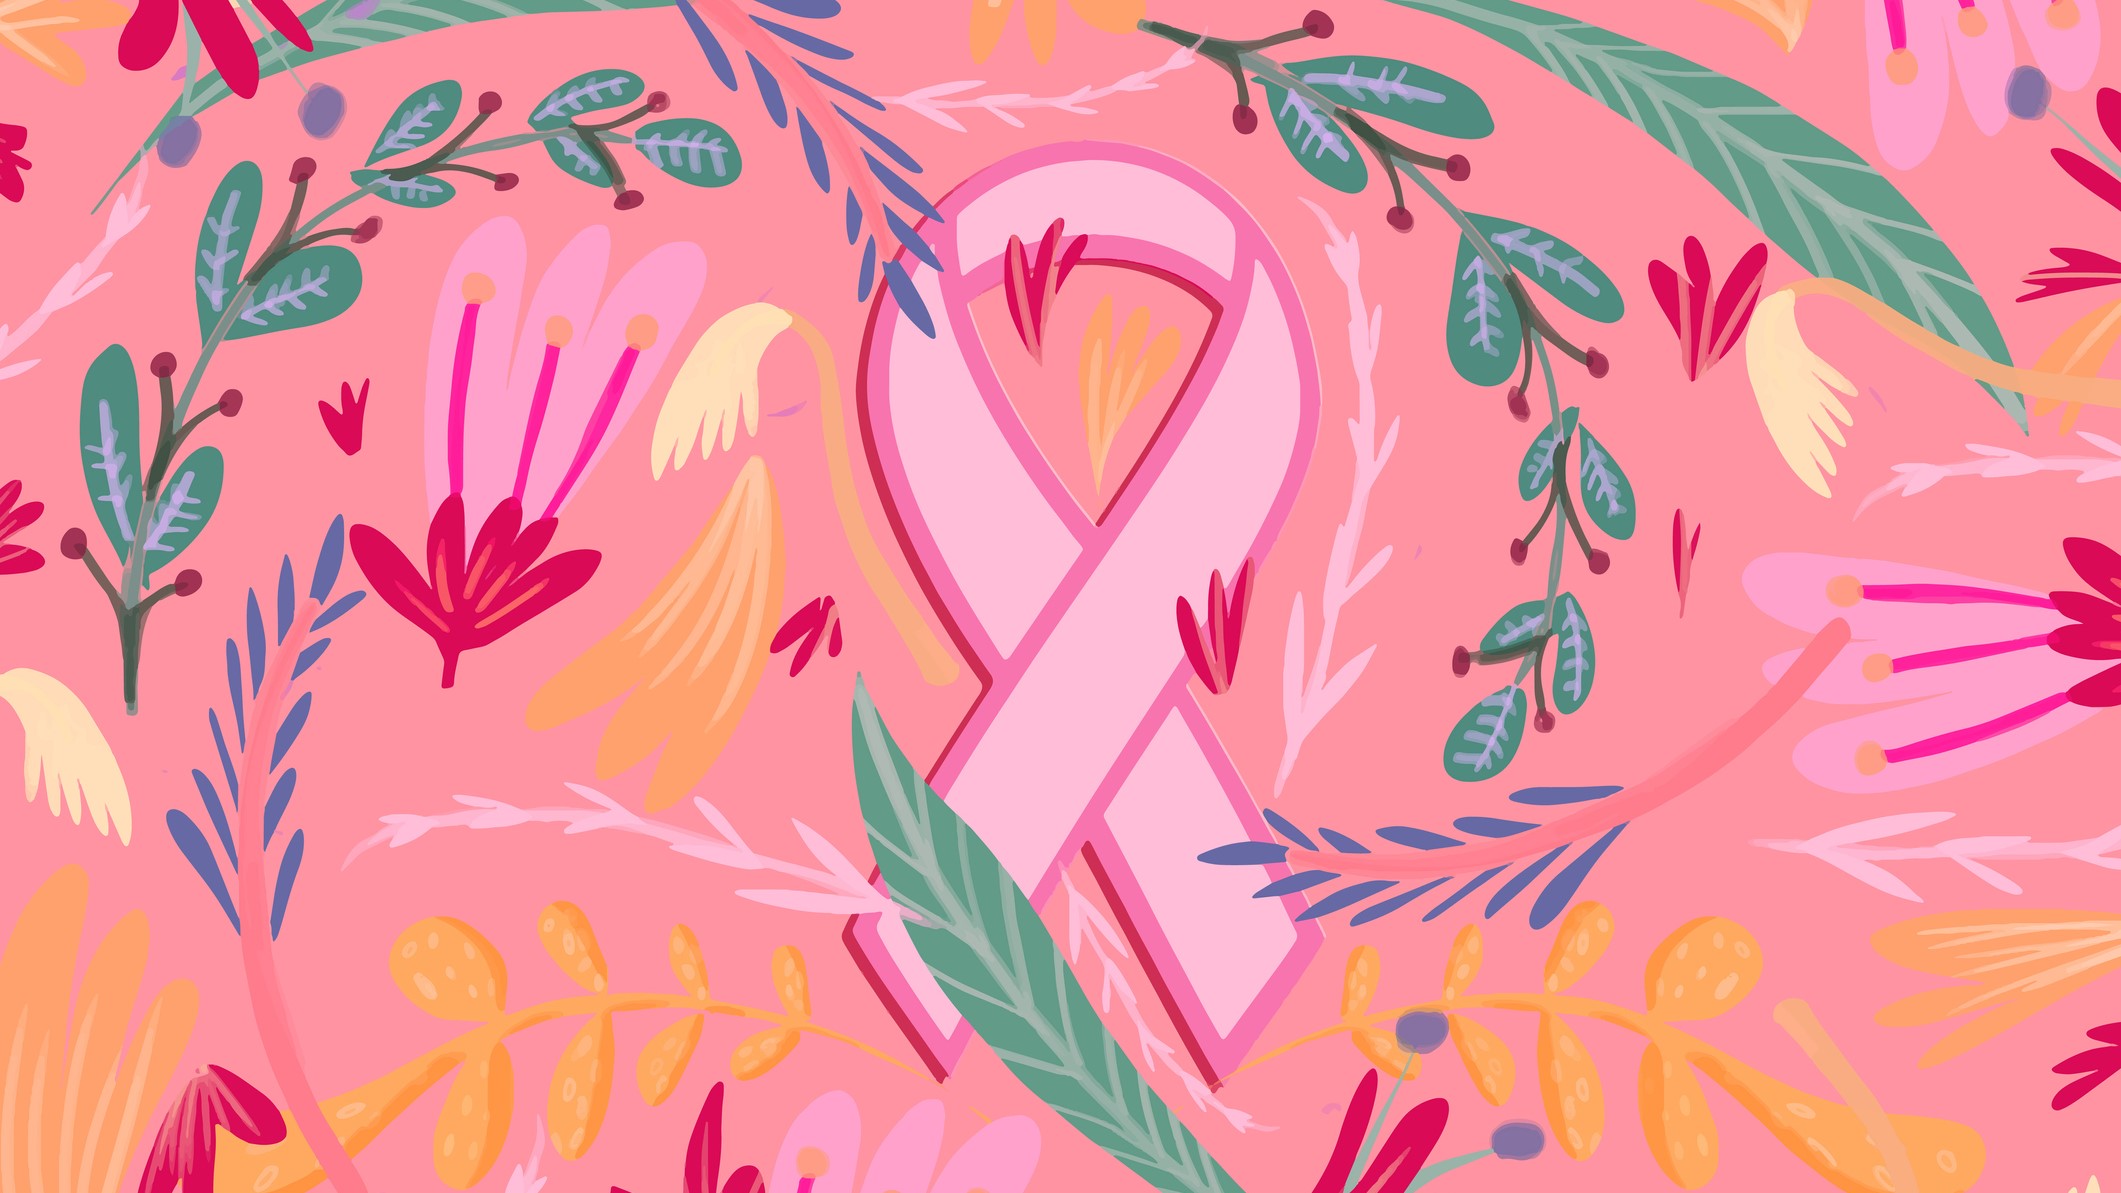 artistic pink ribbon against floral design